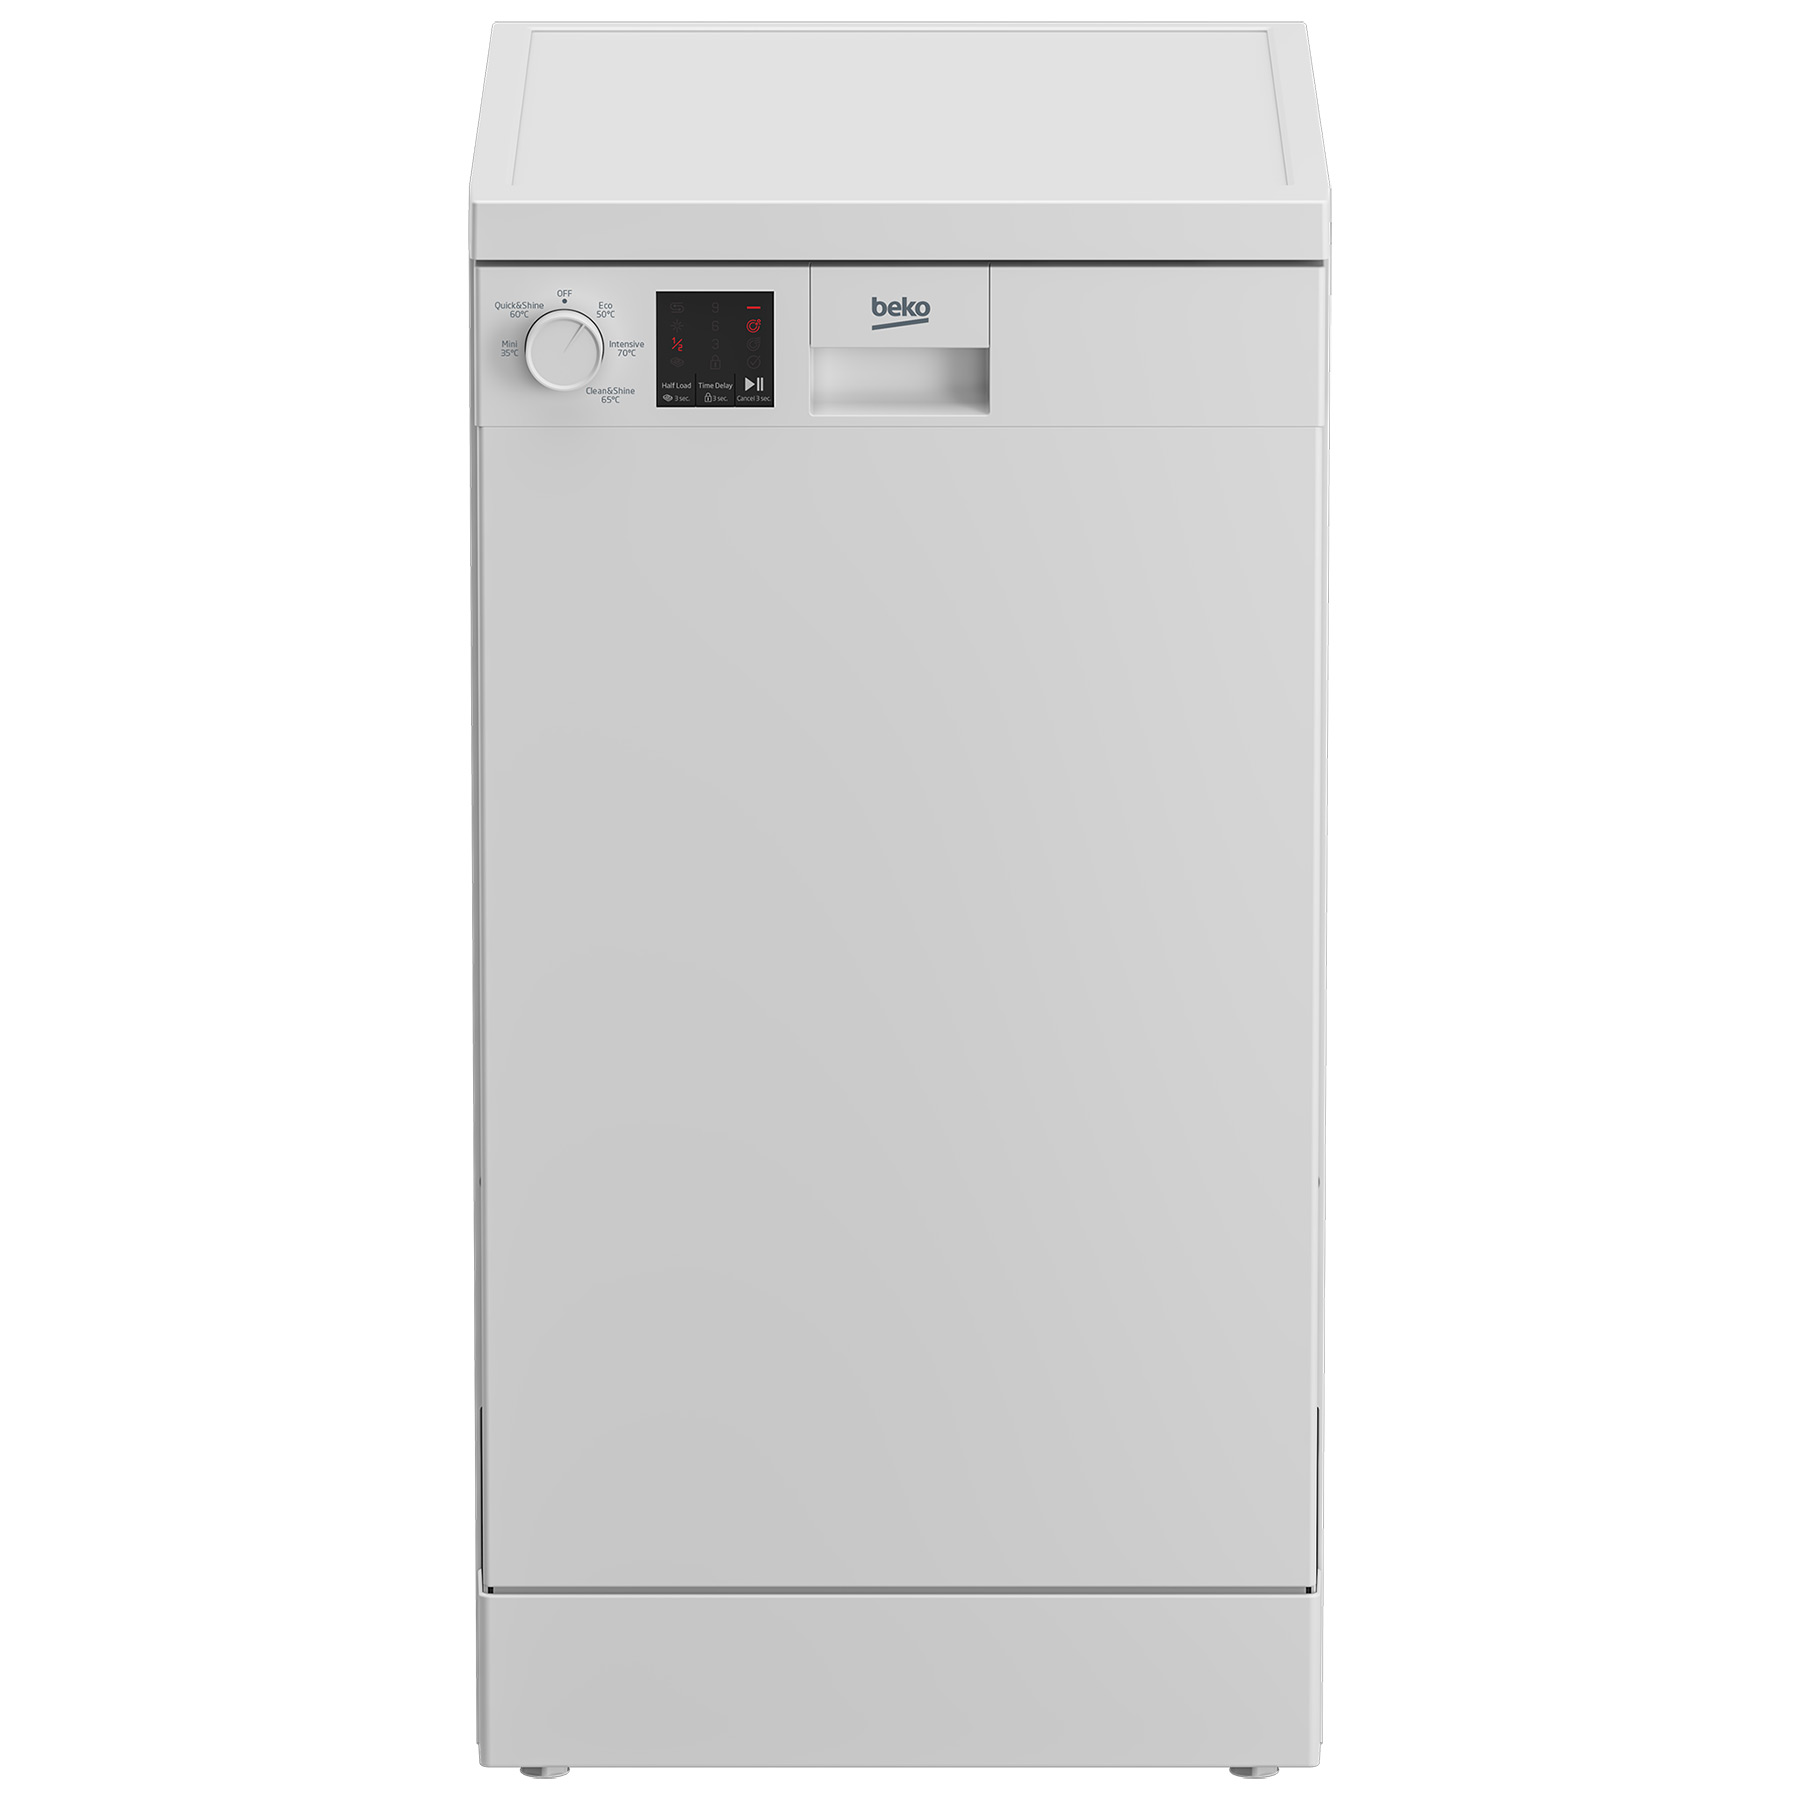 Image of Beko DVS05C20W 45cm Slimline Dishwasher White 10 Place Setting E Rated